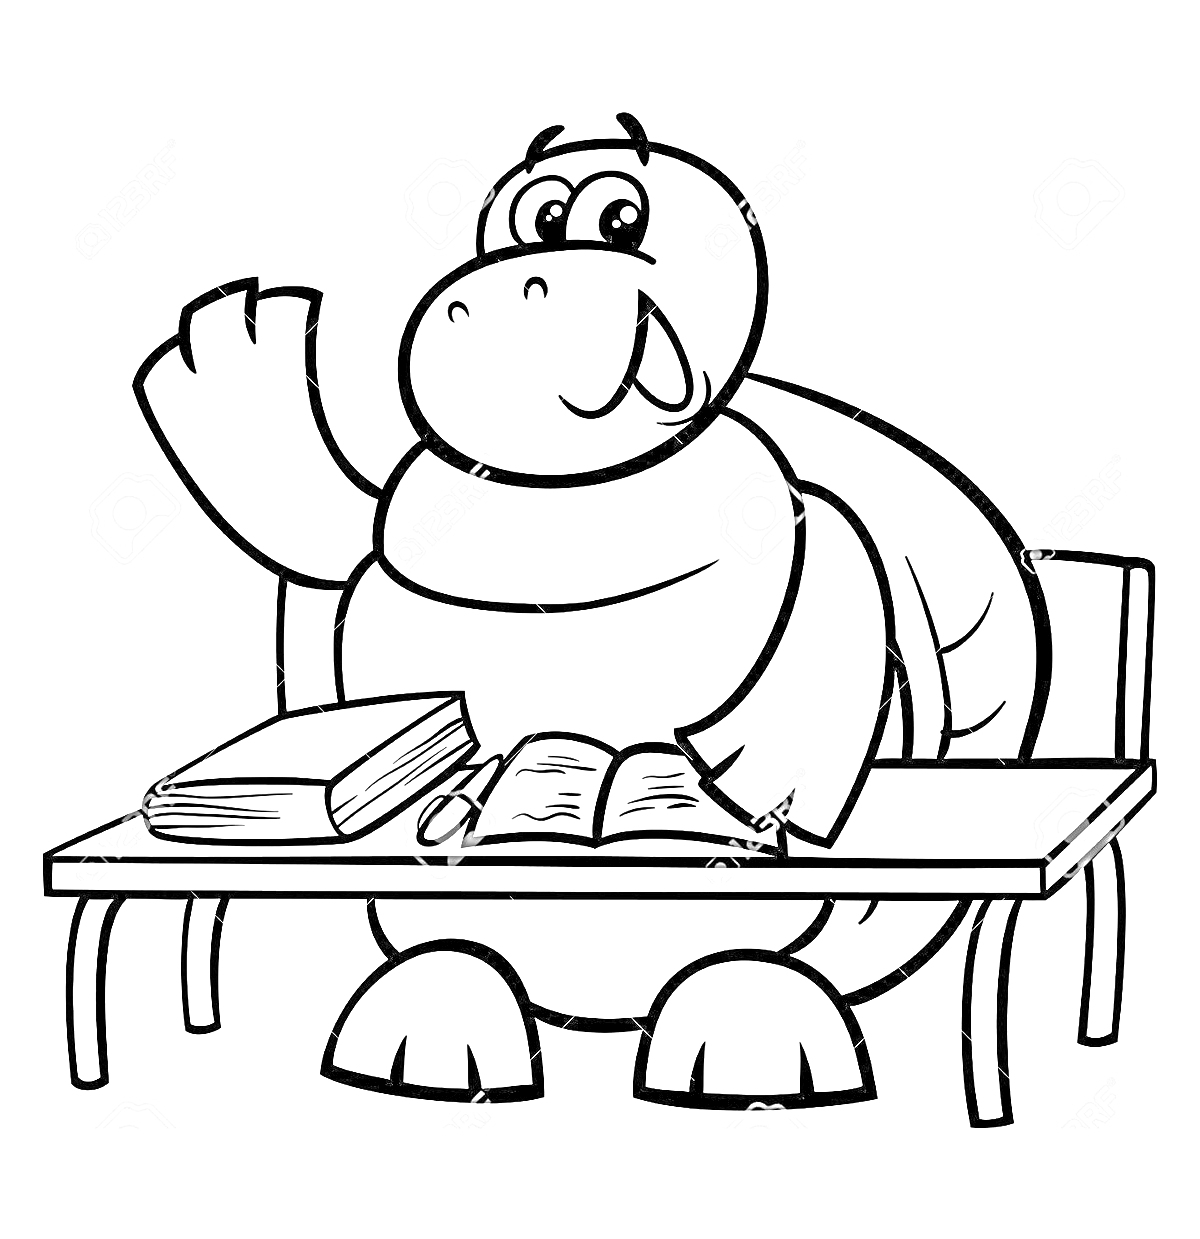 Раскраска Черепаха за партой с учебниками и ручкой